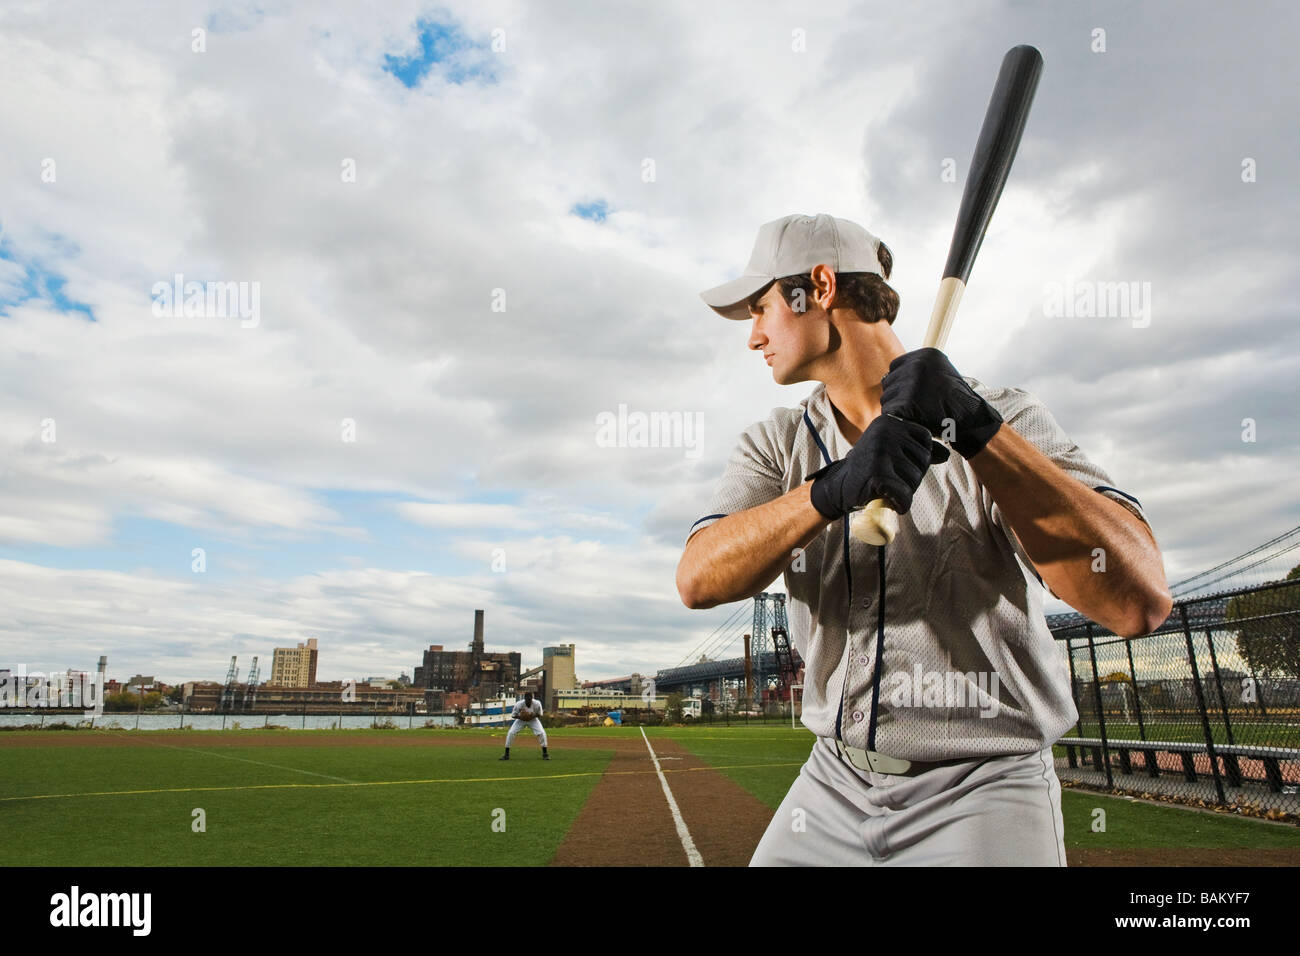 Baseball batter concentrating Stock Photo